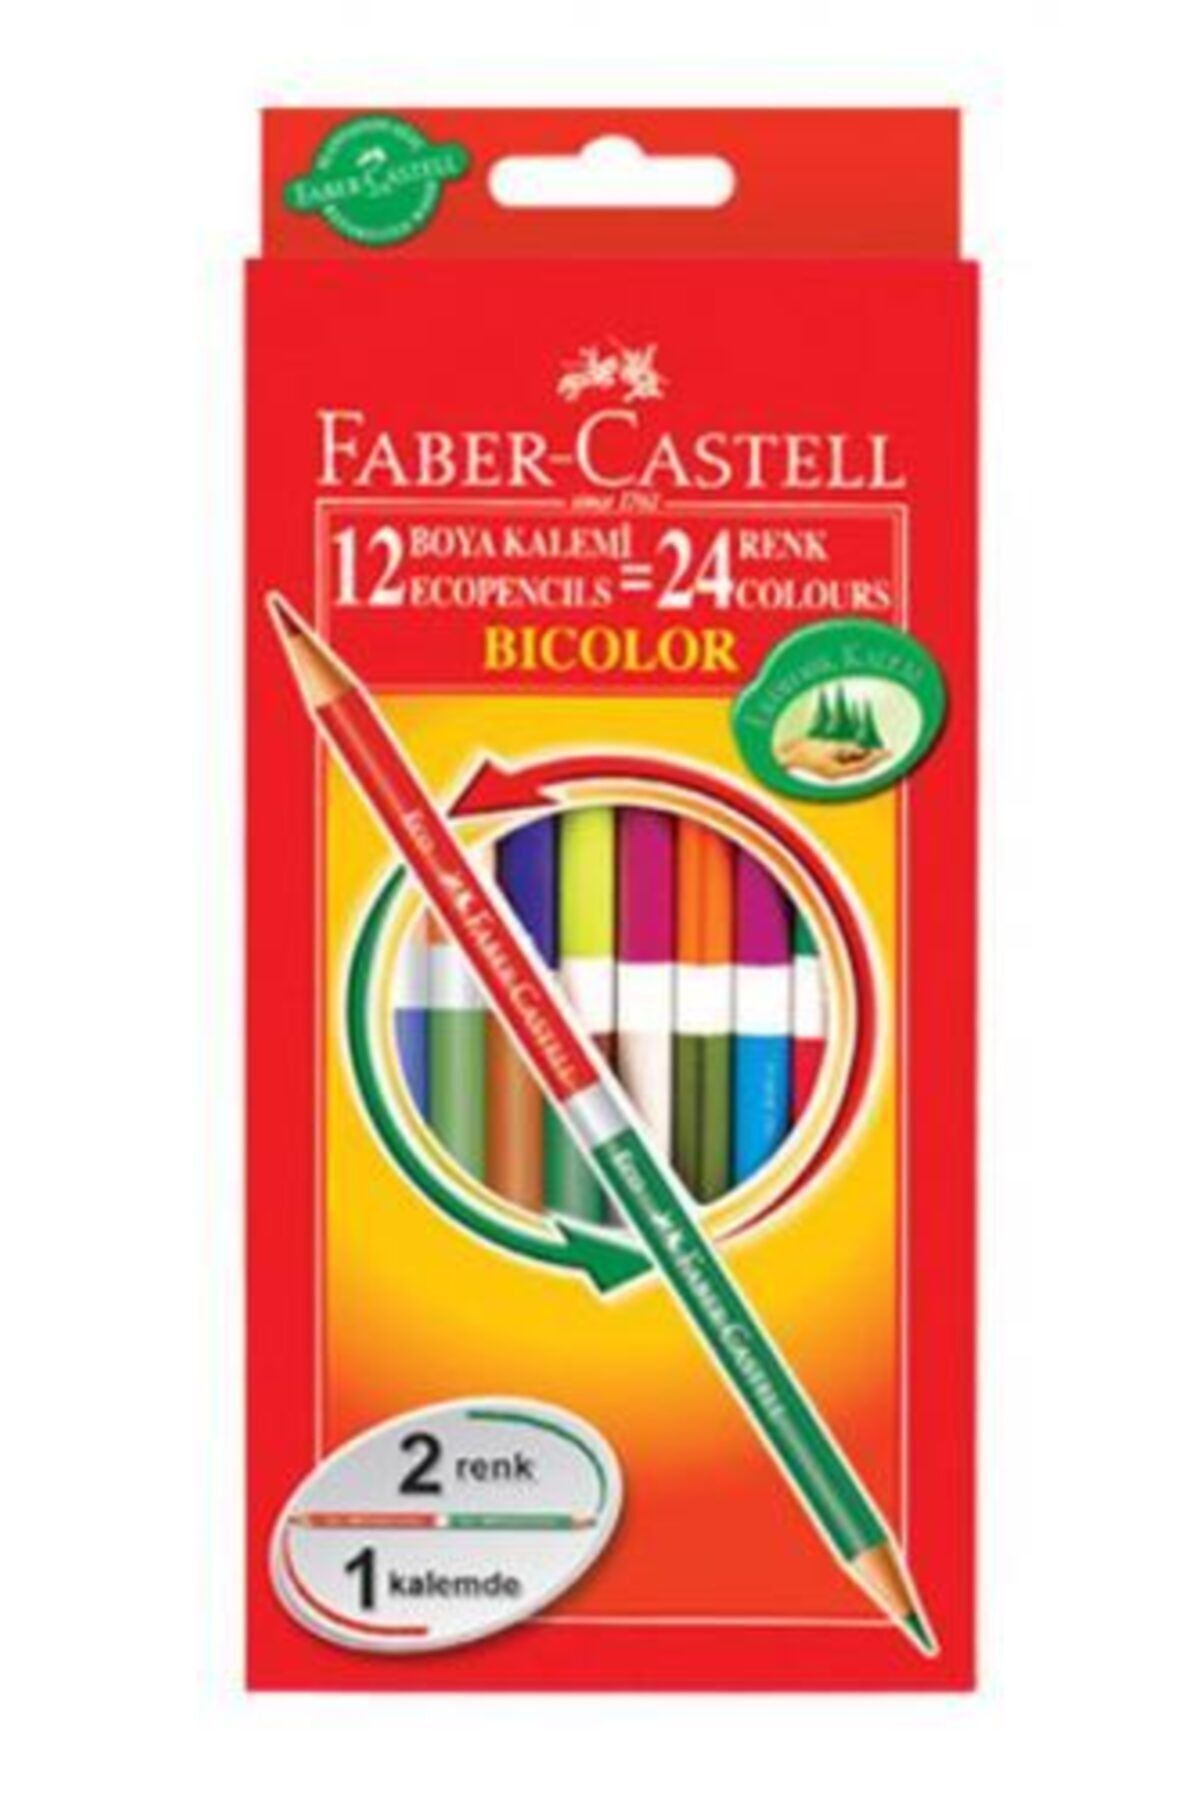 Ceren Kırtasiye Faber-castell Bicolor Boya Kalemi 24 Renk